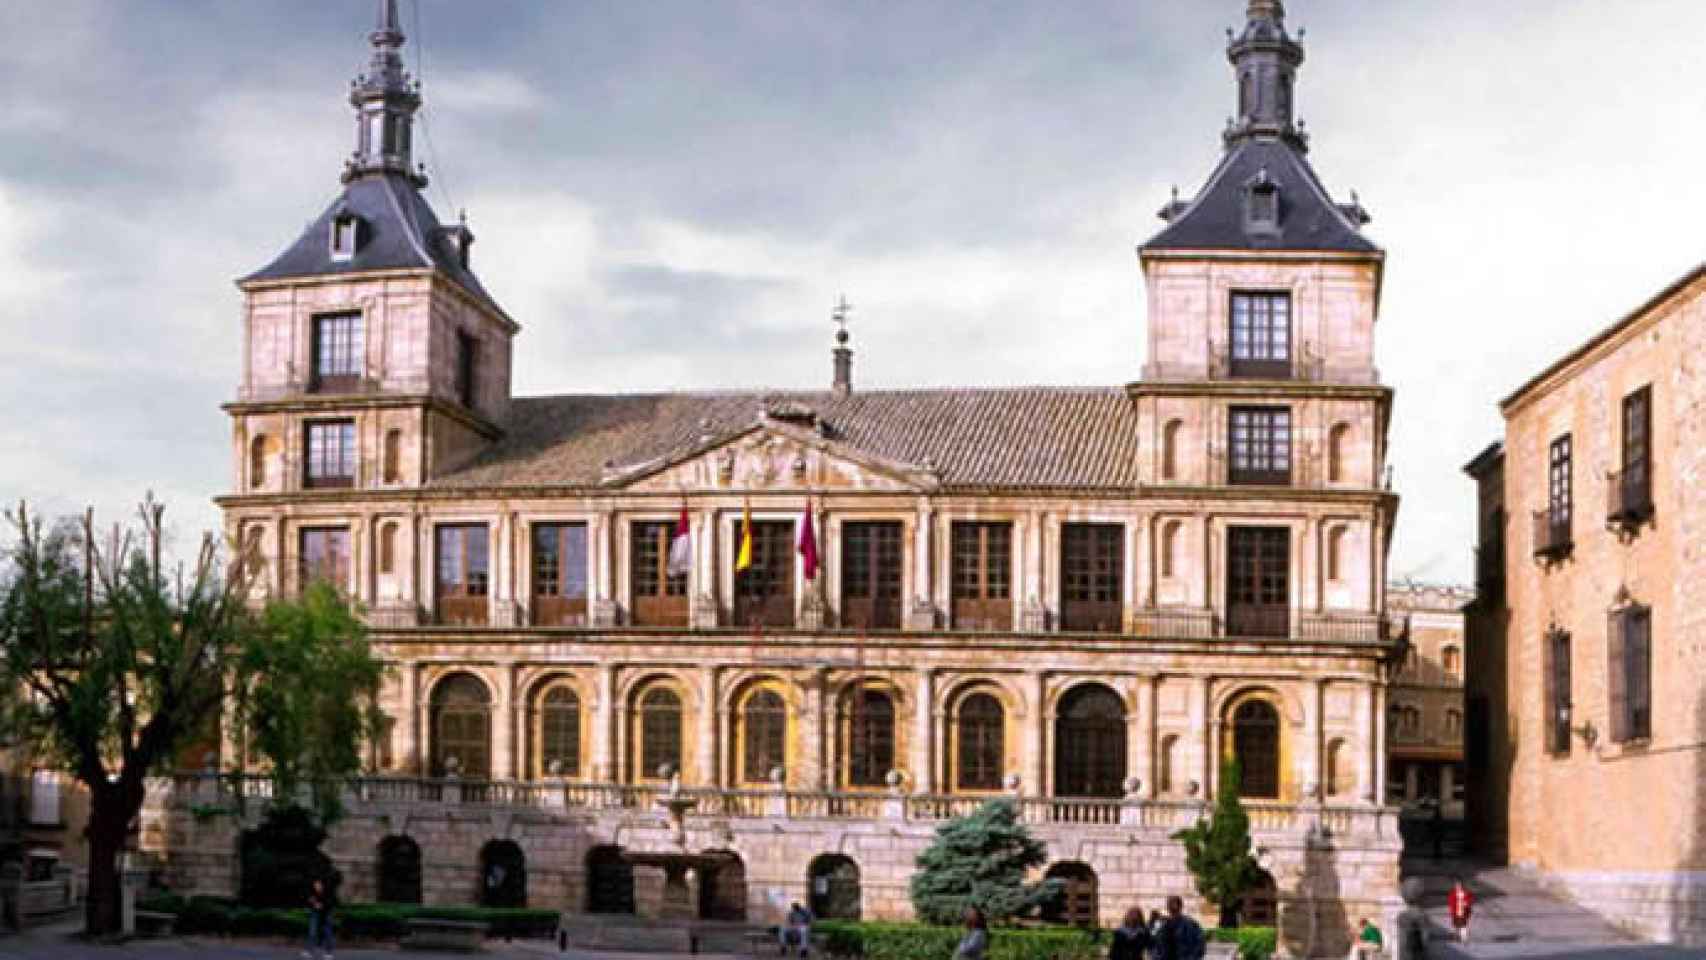 FOTO: Ayuntamiento de Toledo.